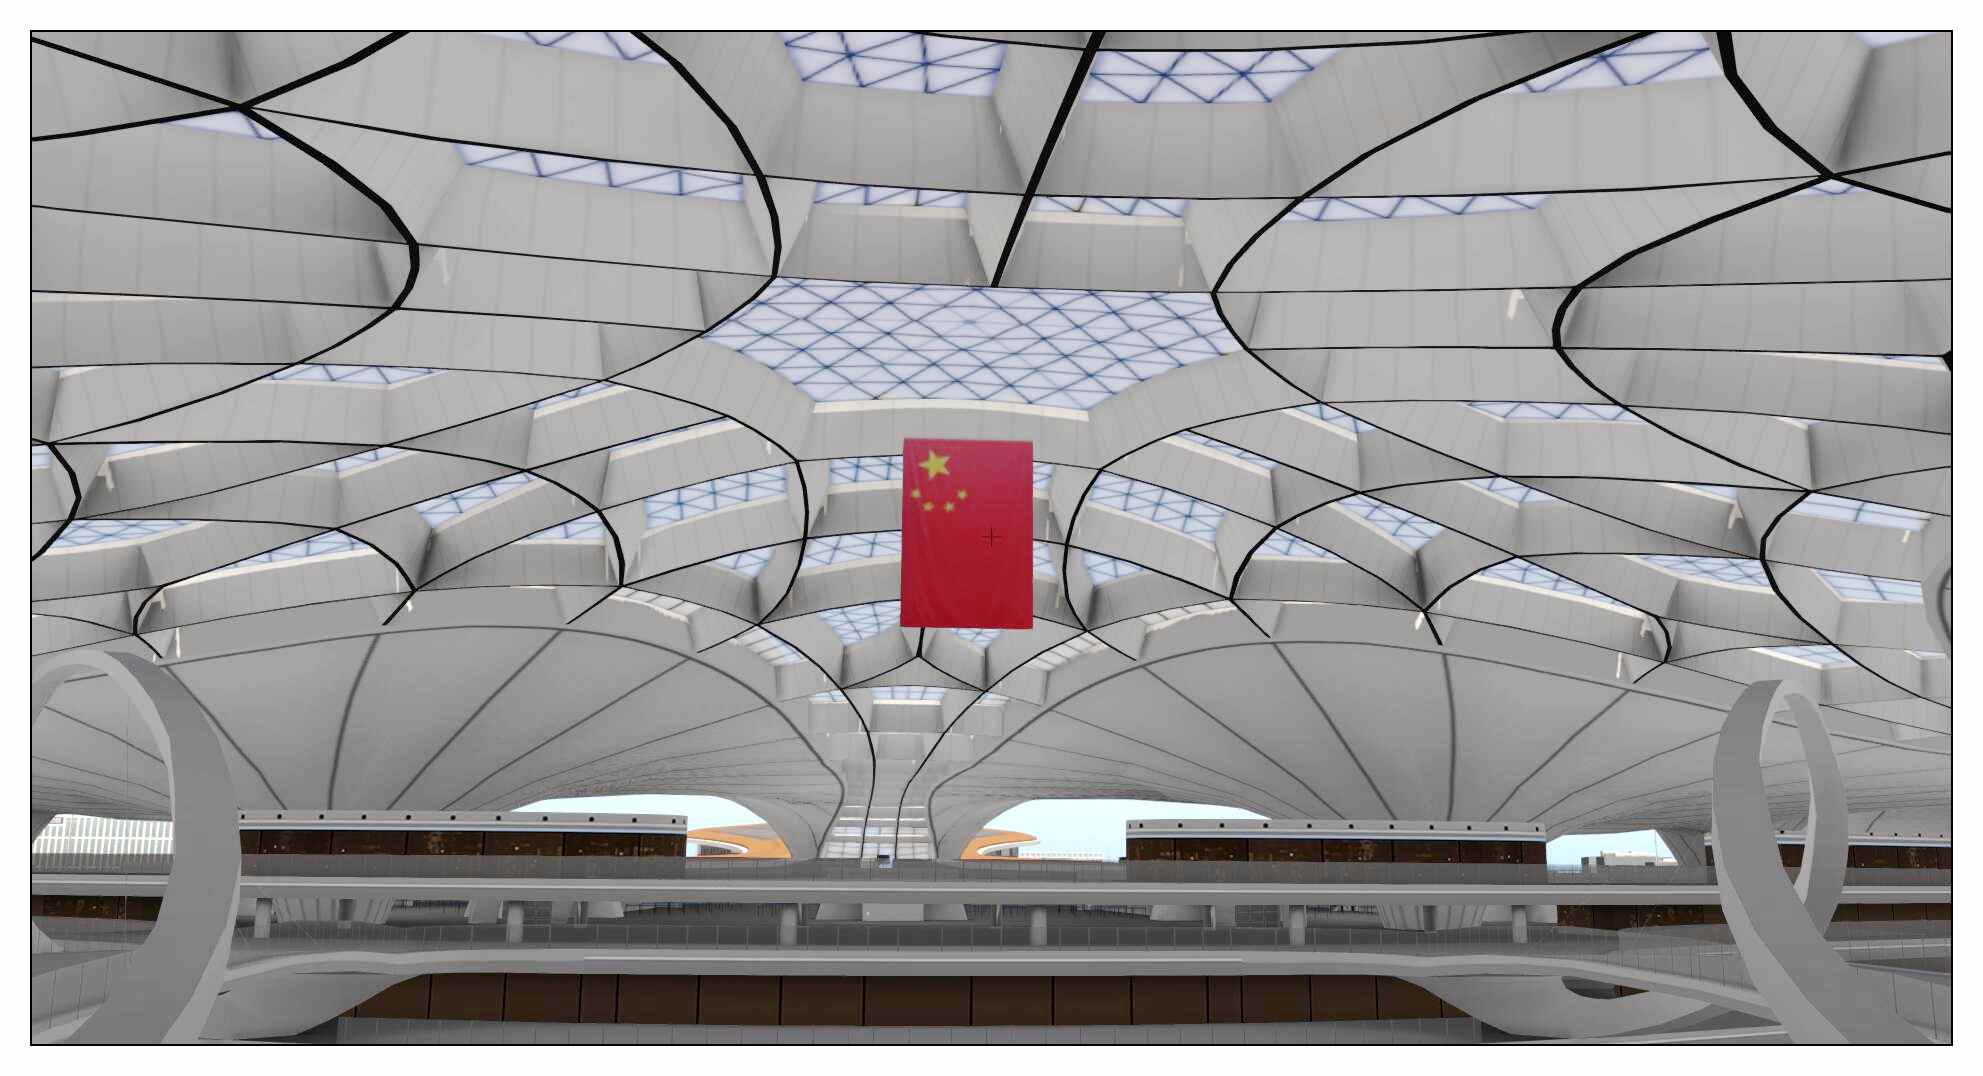 【X-Plane】ZBAD北京大兴国际机场-正式发布-5448 